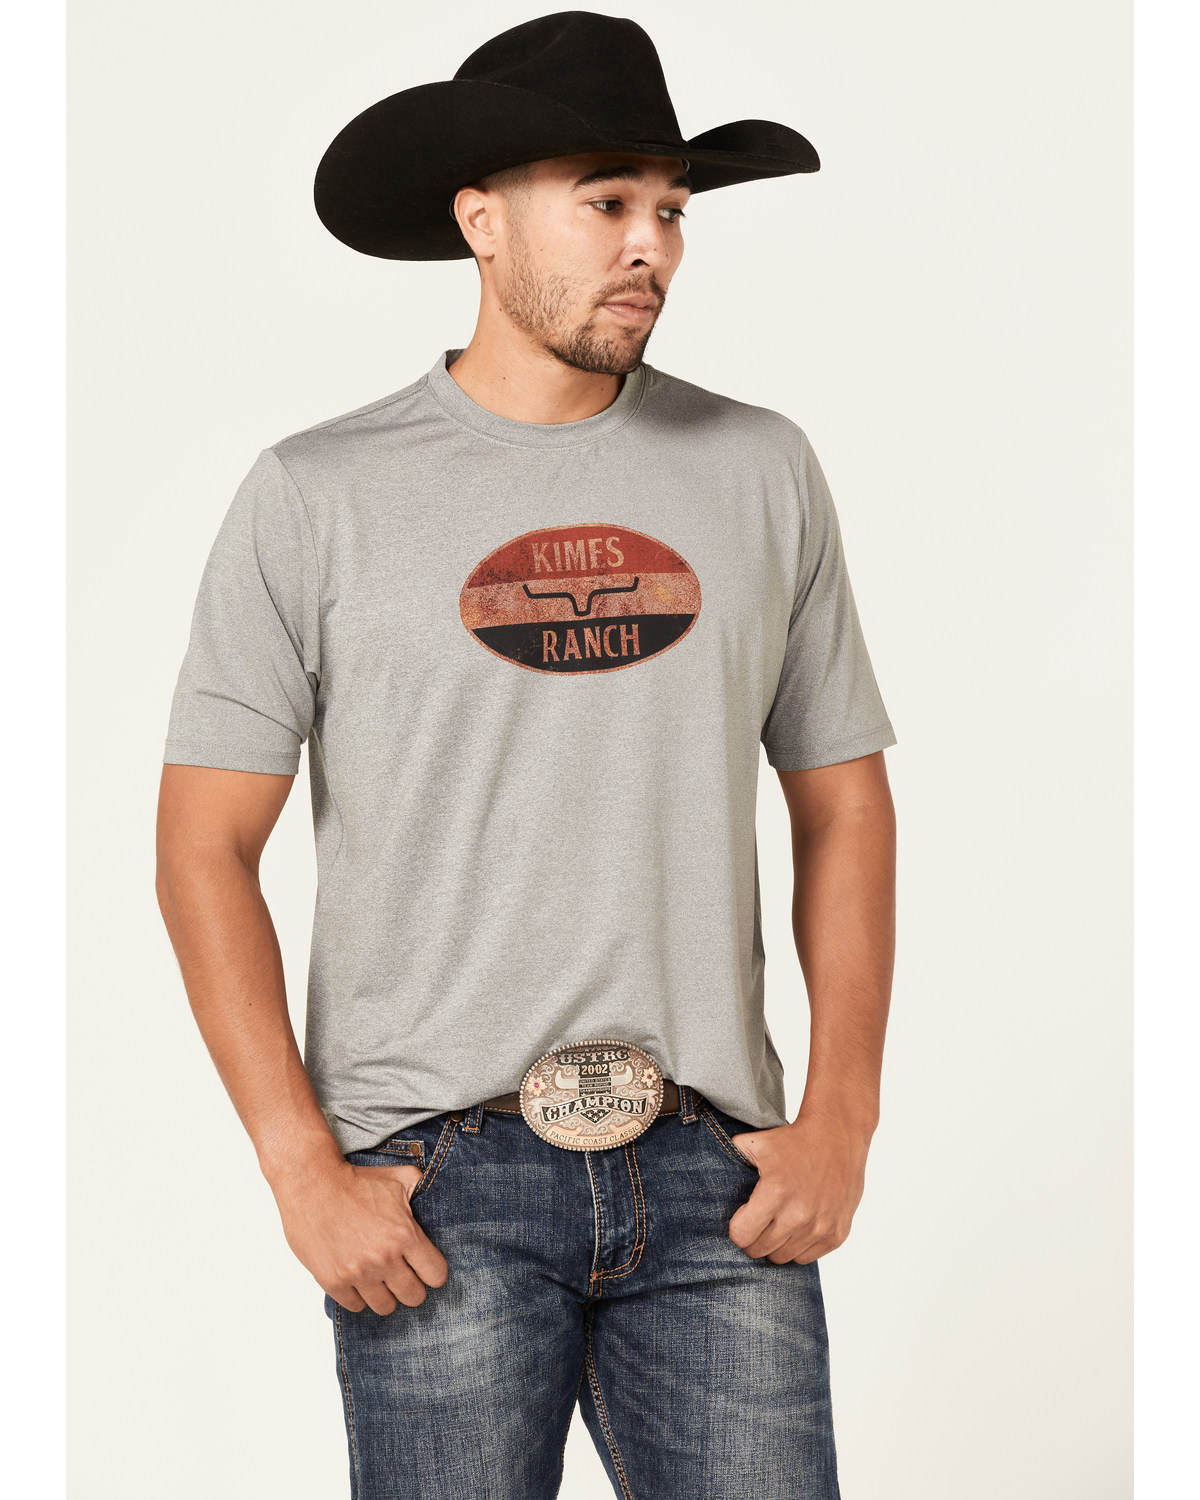 Kimes Ranch Men's American Standard Tech T-Shirt